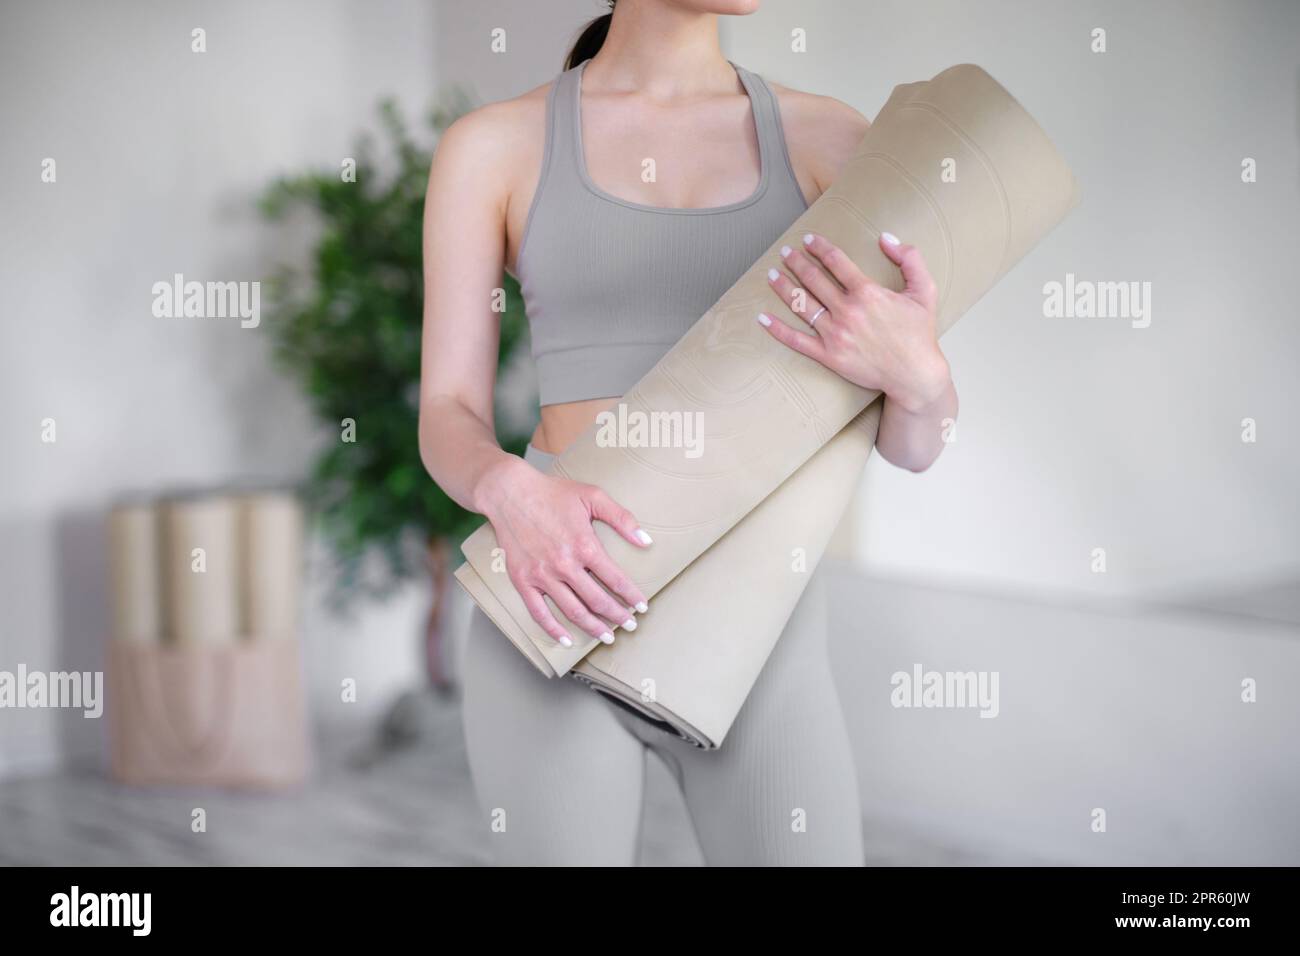 Junge Frau, die Yogamatten hält, während sie in einem hellen Studio steht. Stockfoto